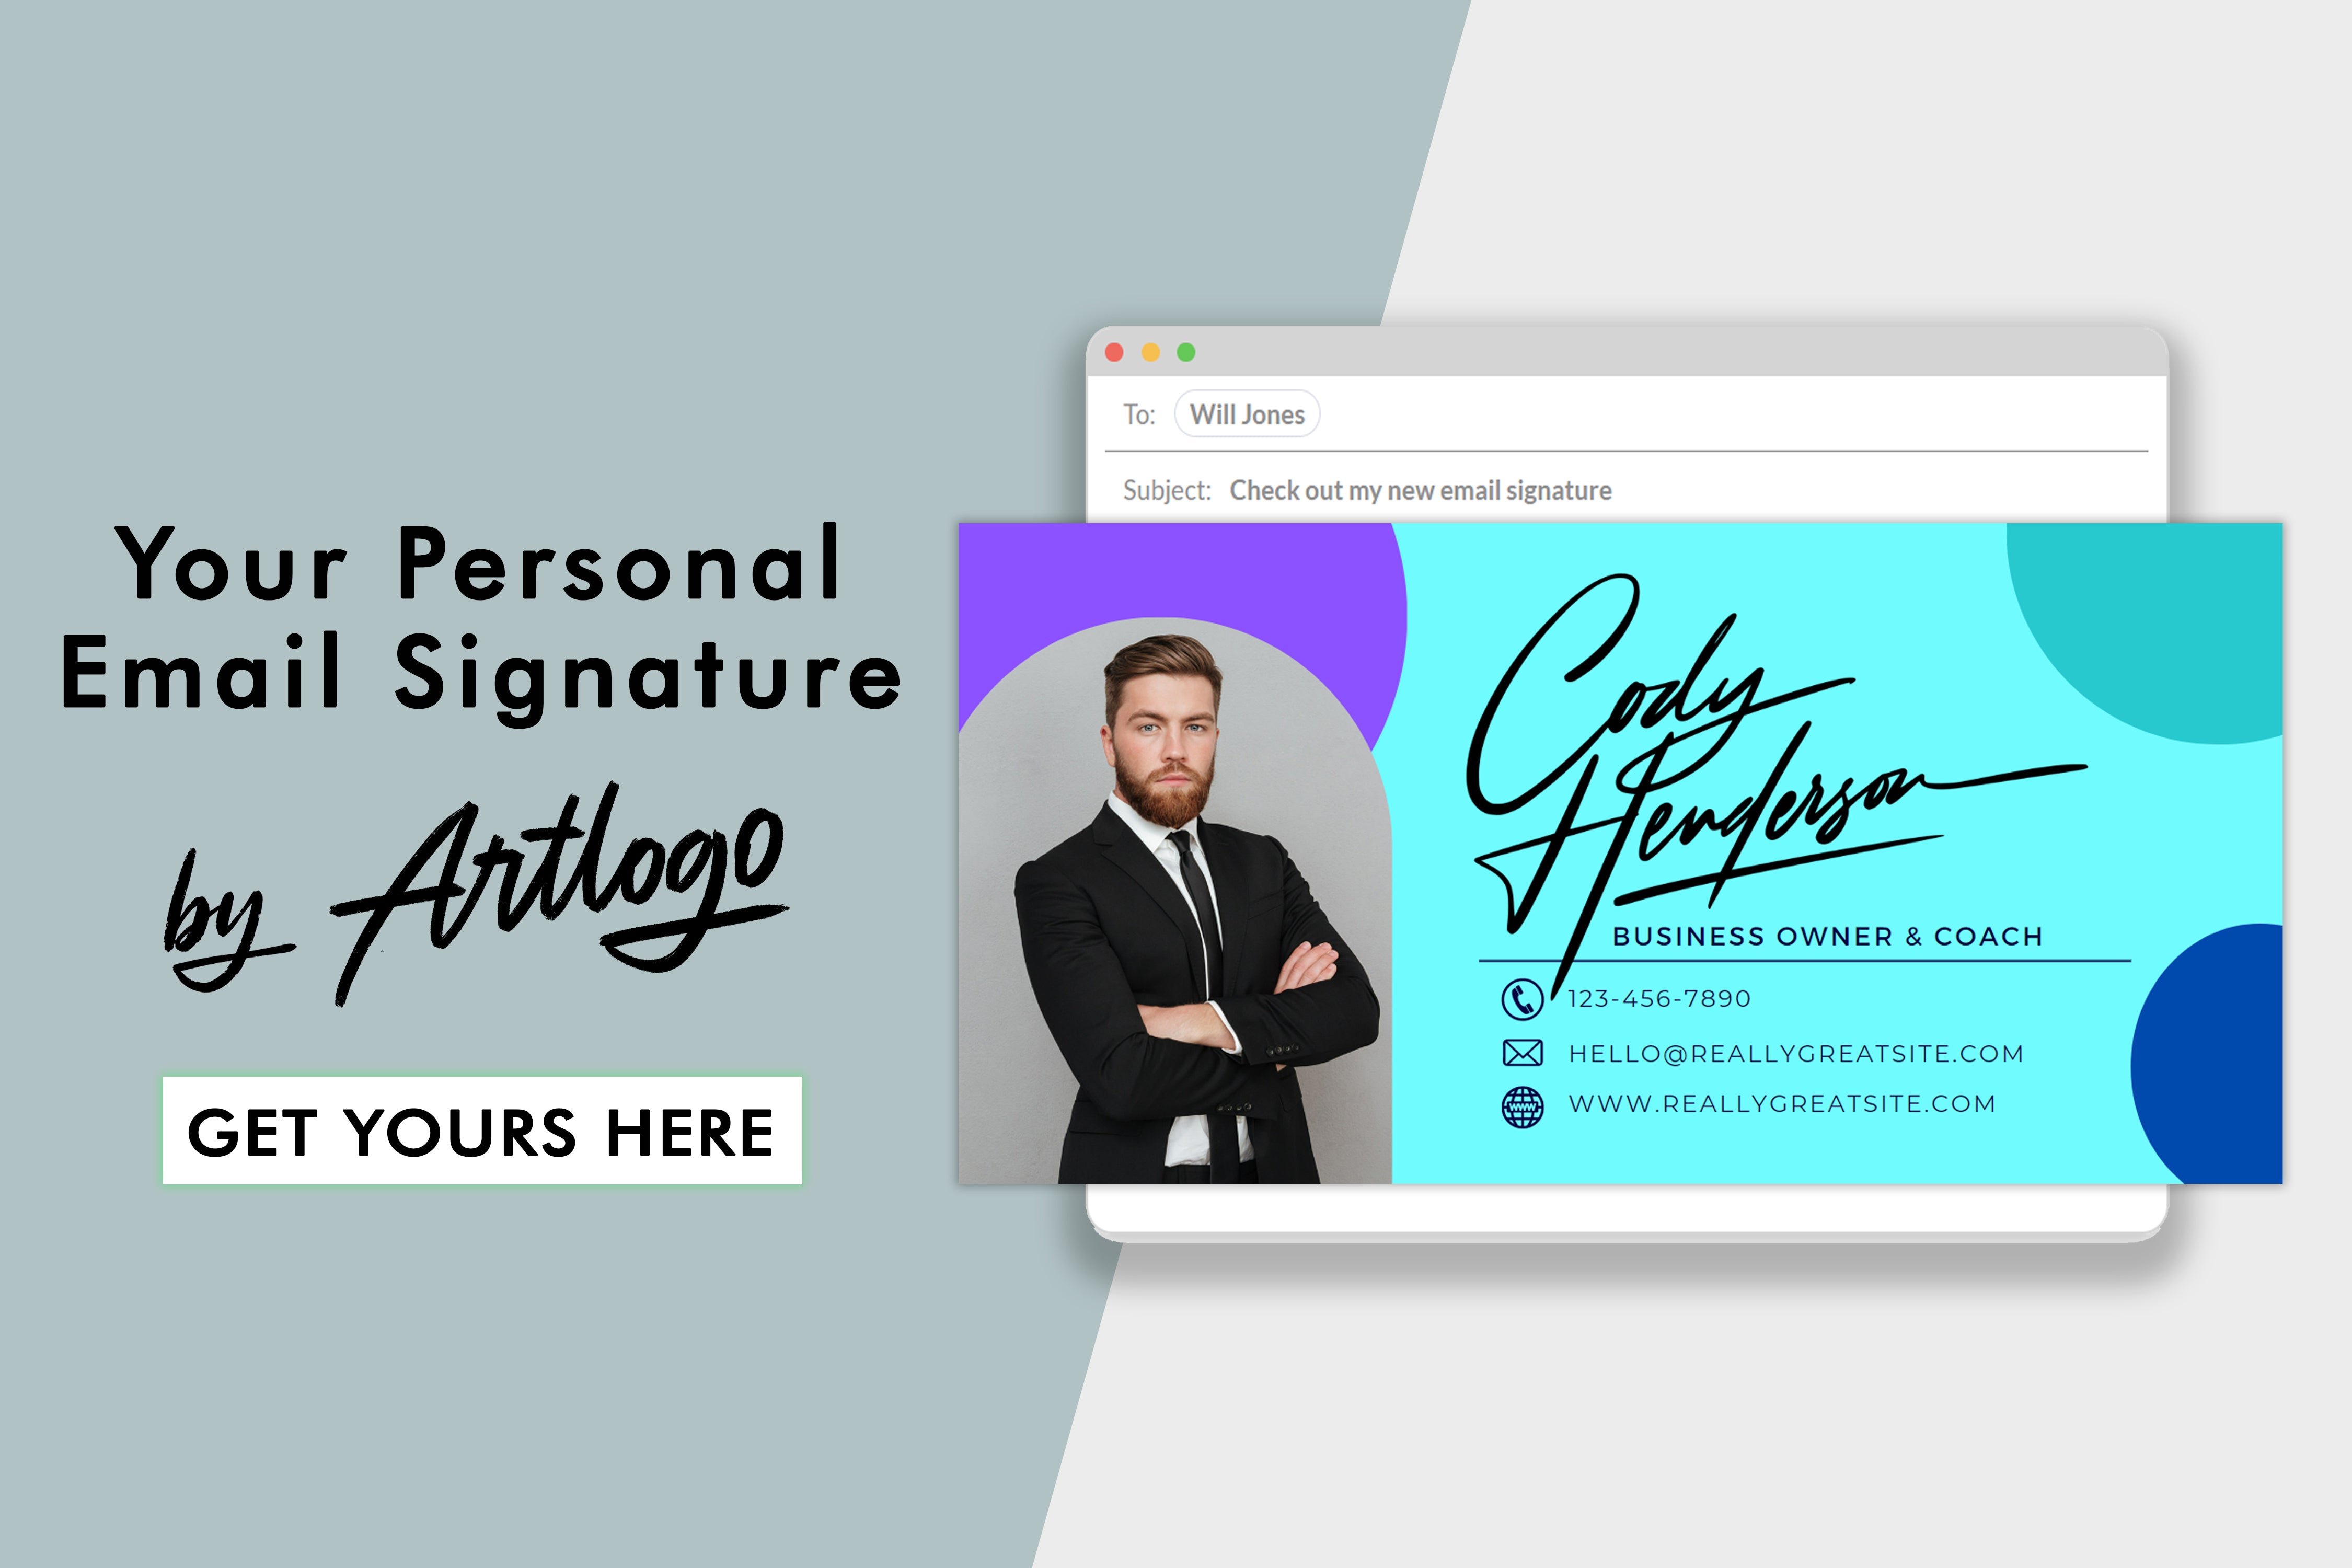 Domine a arte de criar assinaturas de e-mail em HTML com este guia passo a passo. Crie assinaturas profissionais e personalizadas sem esforço.